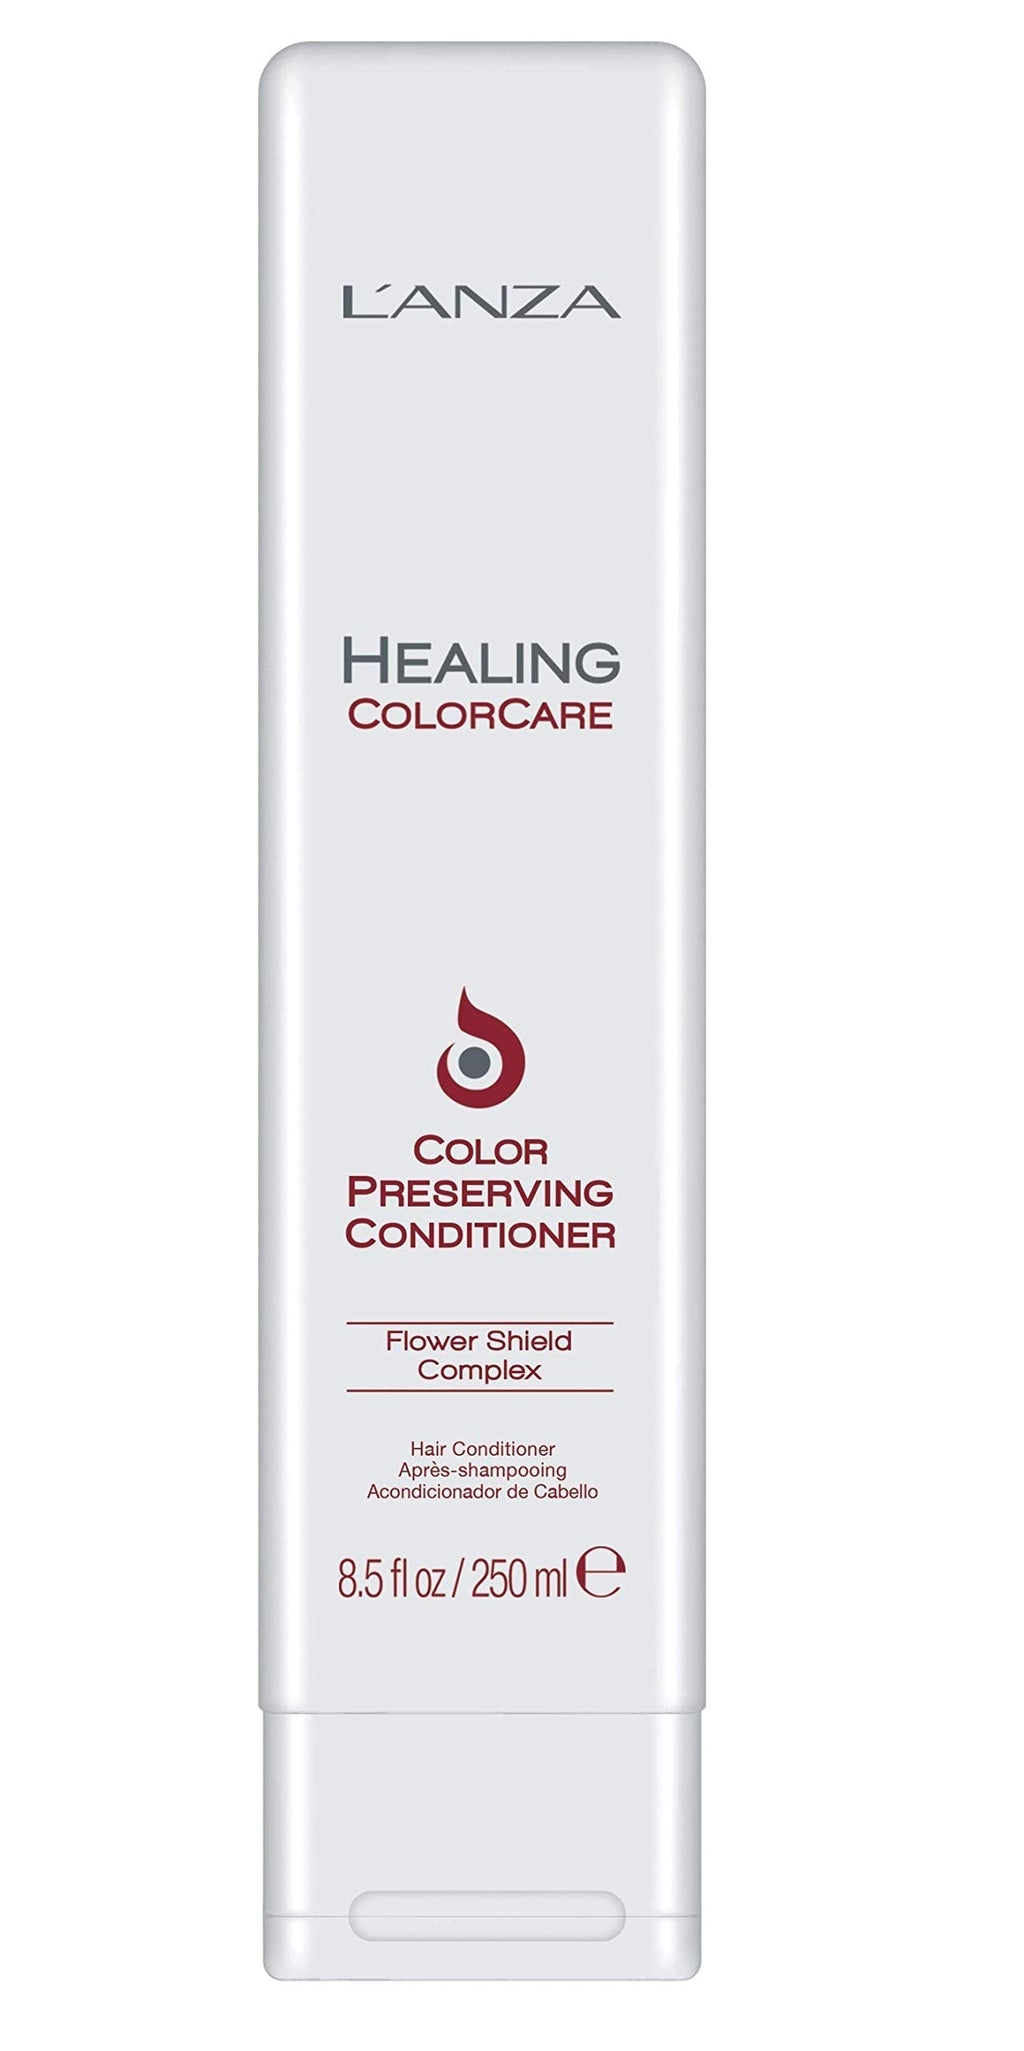 [Australia] - Healing Colorcare by L'Anza Color Preserving Conditioner 250ml 